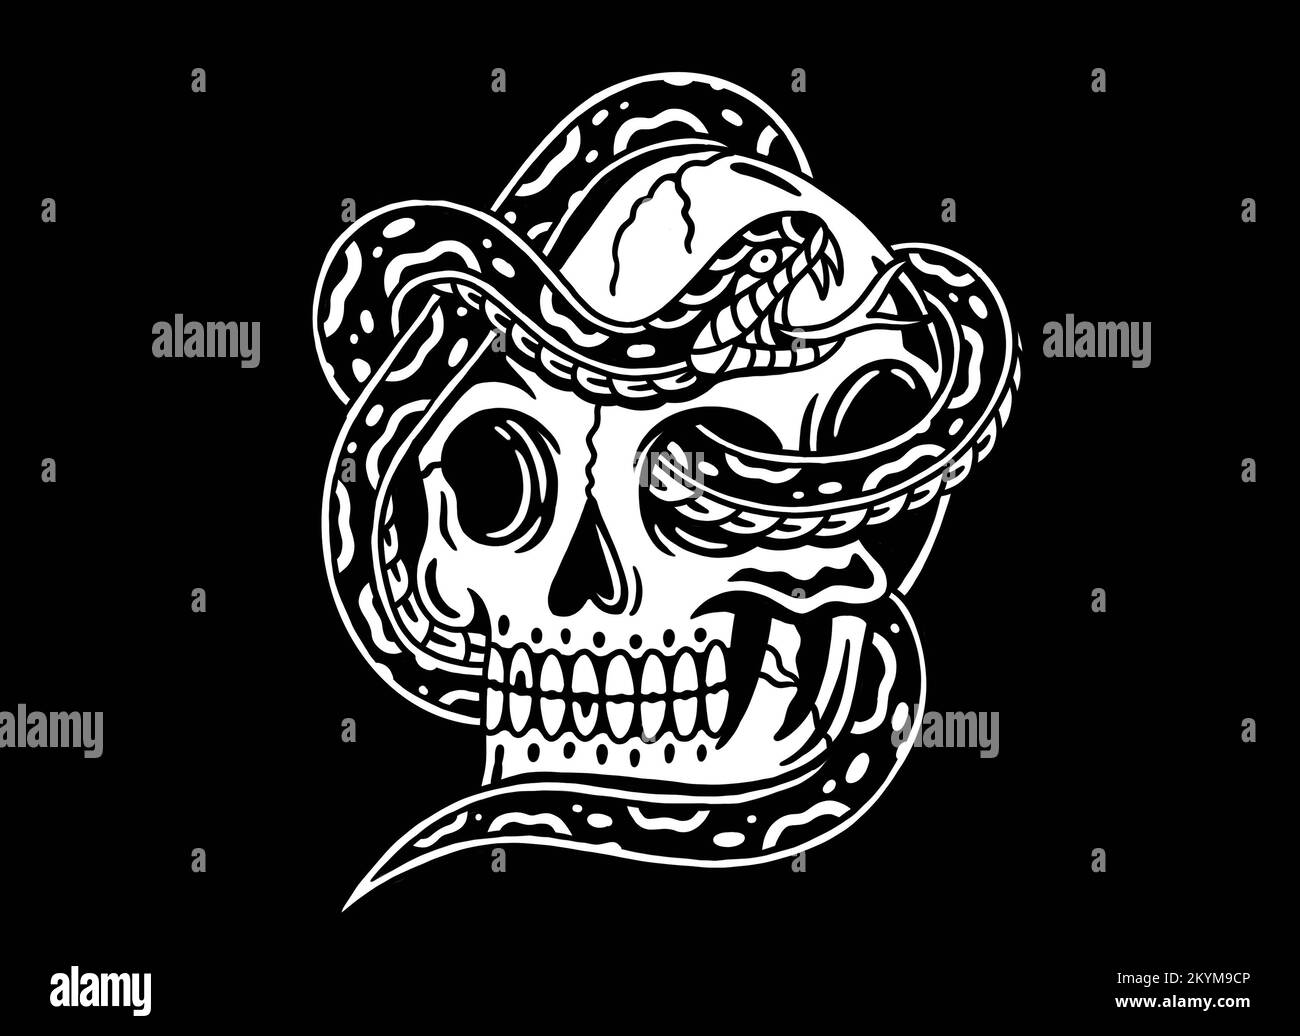 Vieux fonds d'écran traditionnel tattoo inspiré cool design graphique illustration crâne humain avec serpent en noir et blanc sur fond noir Banque D'Images